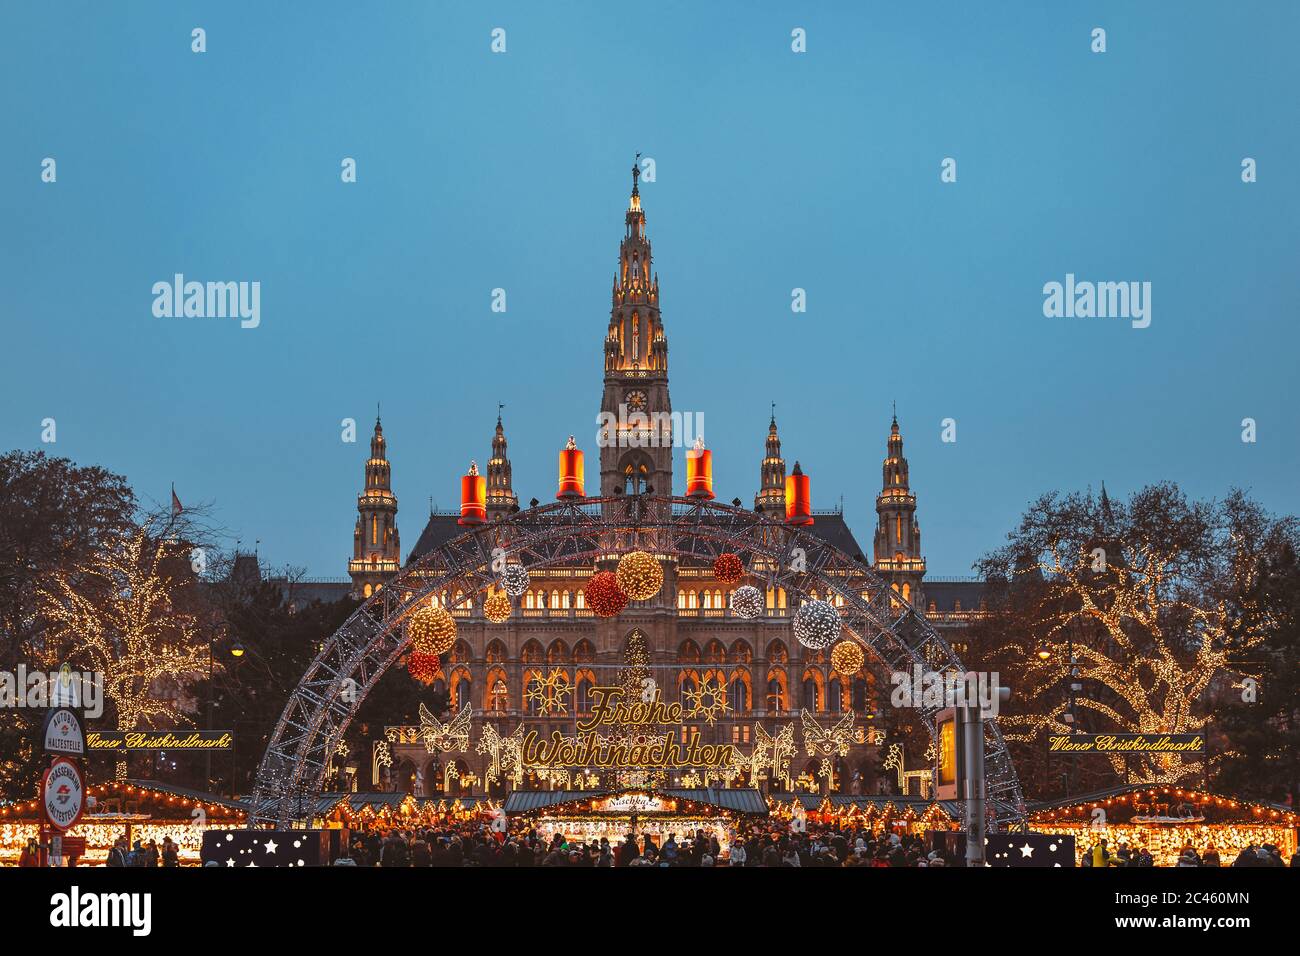 Marché de Noël à l'hôtel de ville de Vienne, lumière bleue de l'heure Banque D'Images